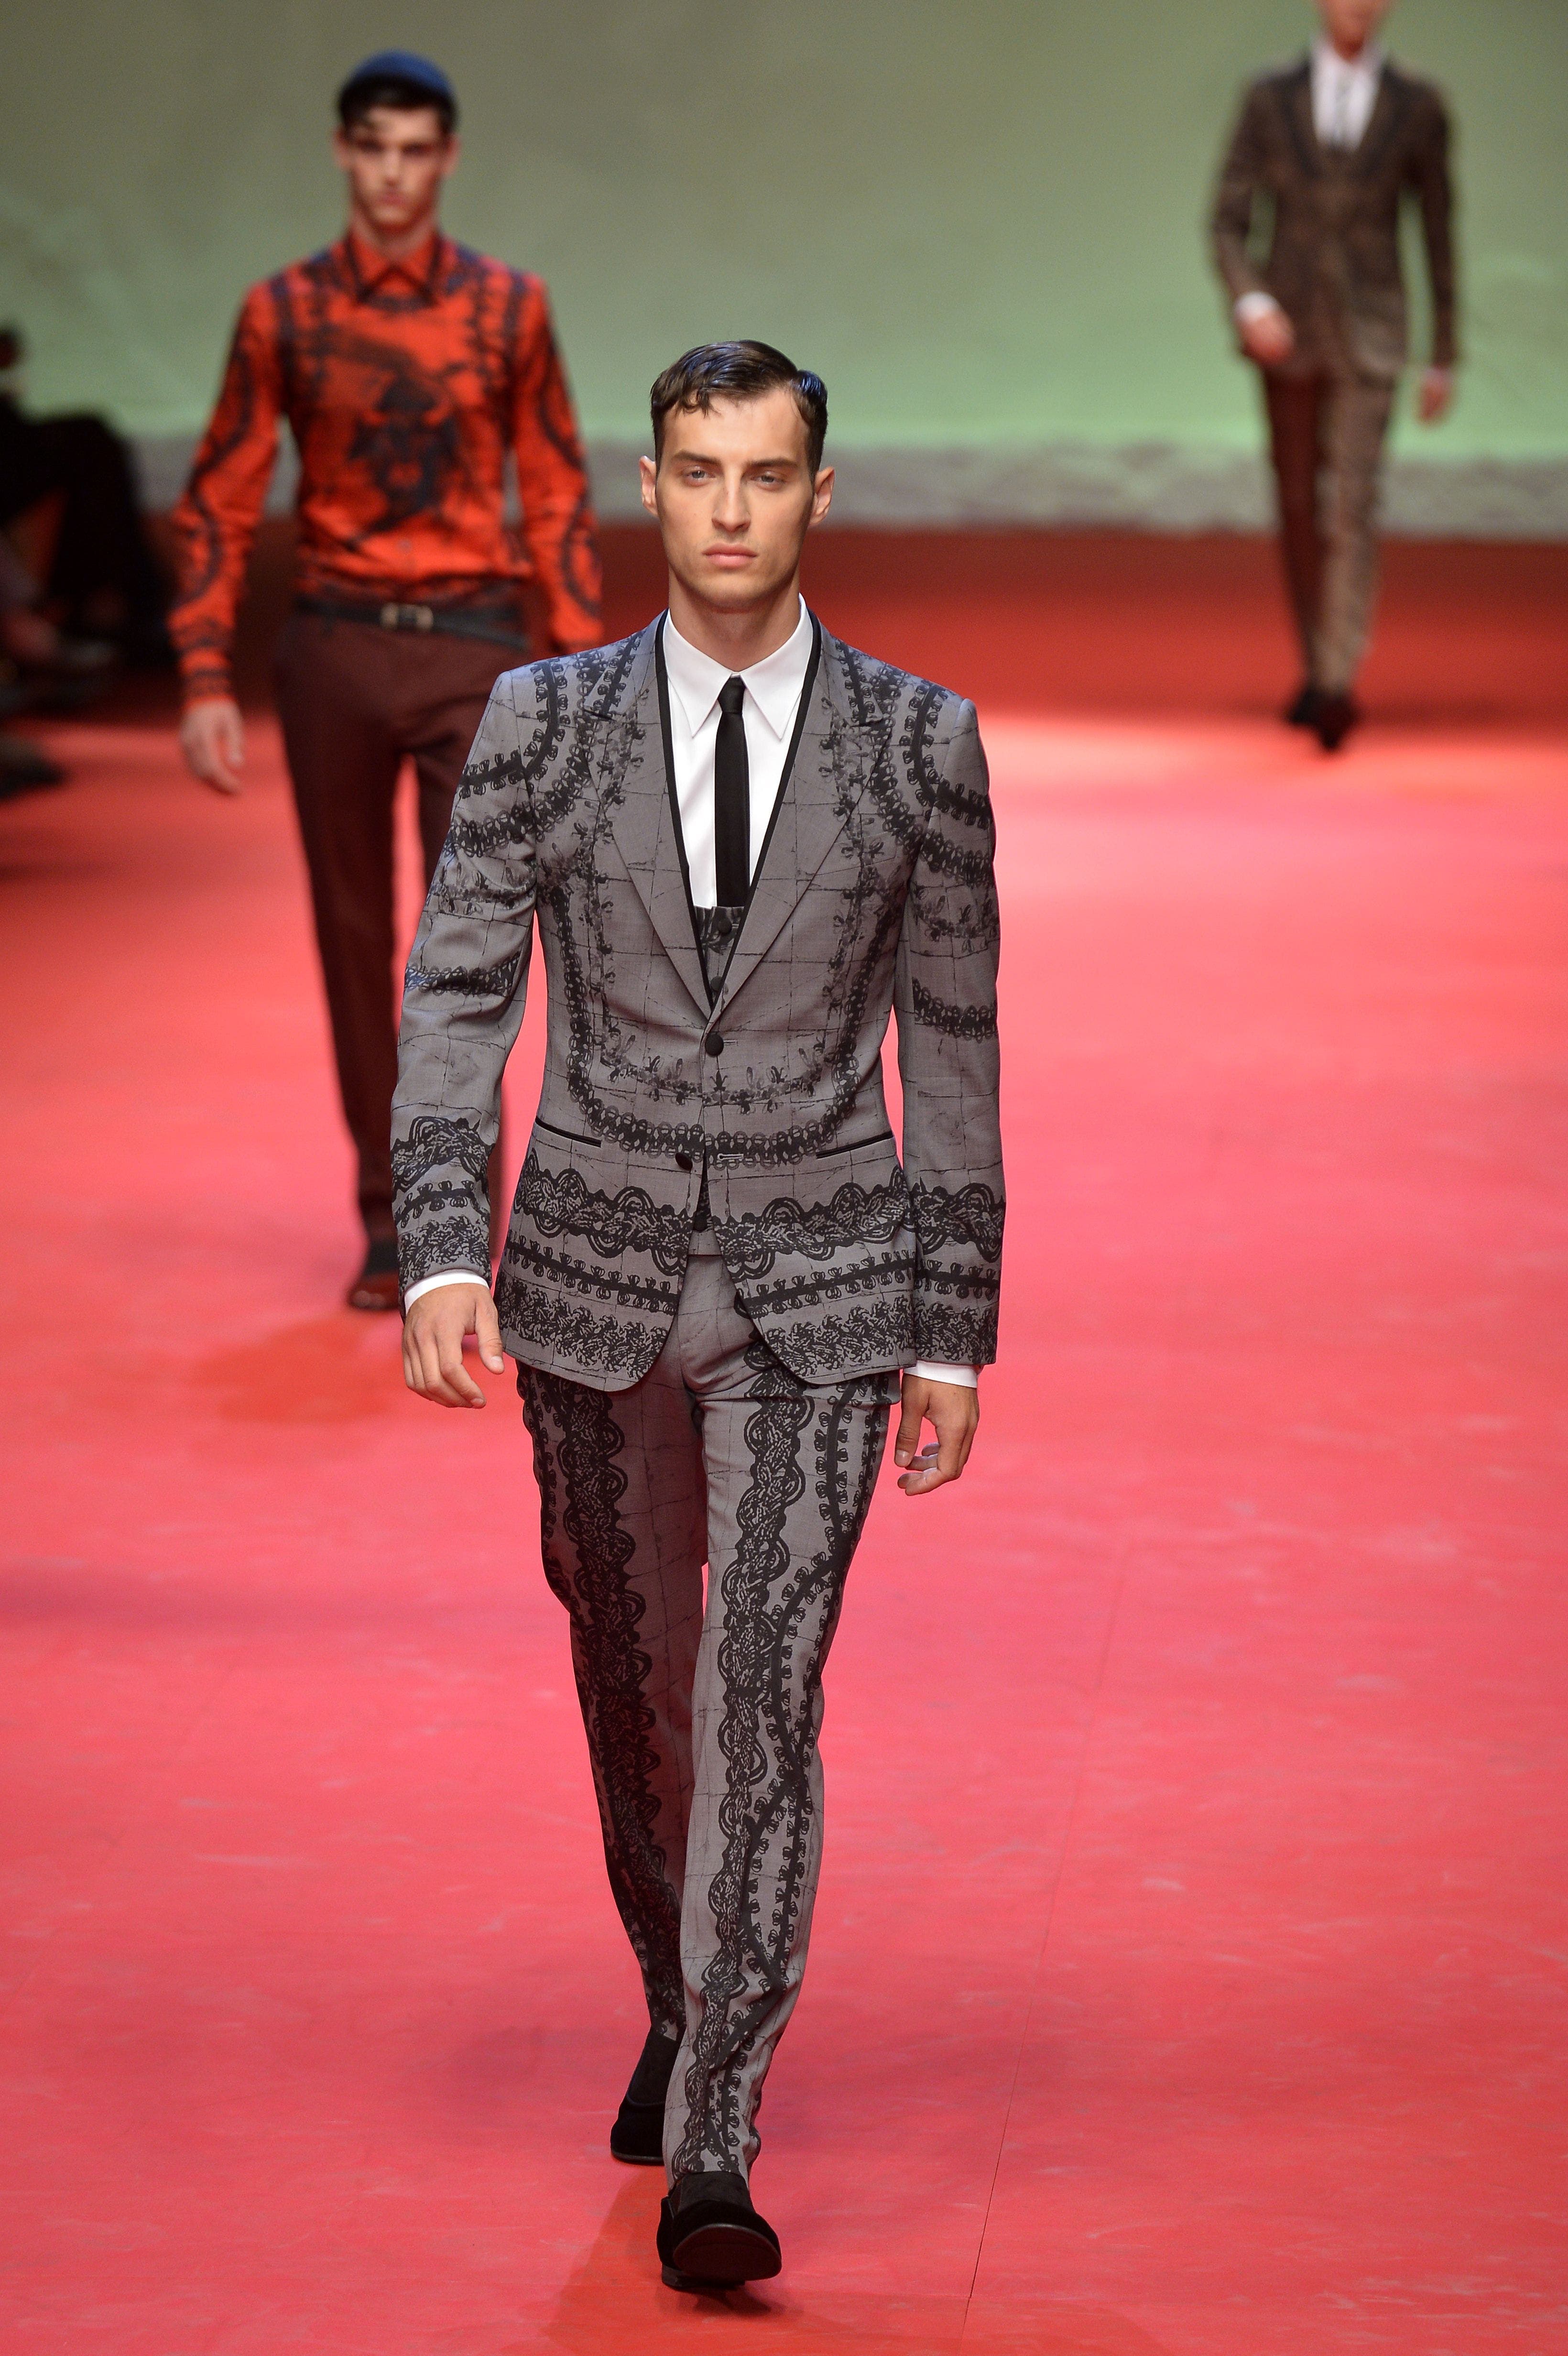 Dolce&Gabbana presents a flourish of crimson suits | Al Arabiya English